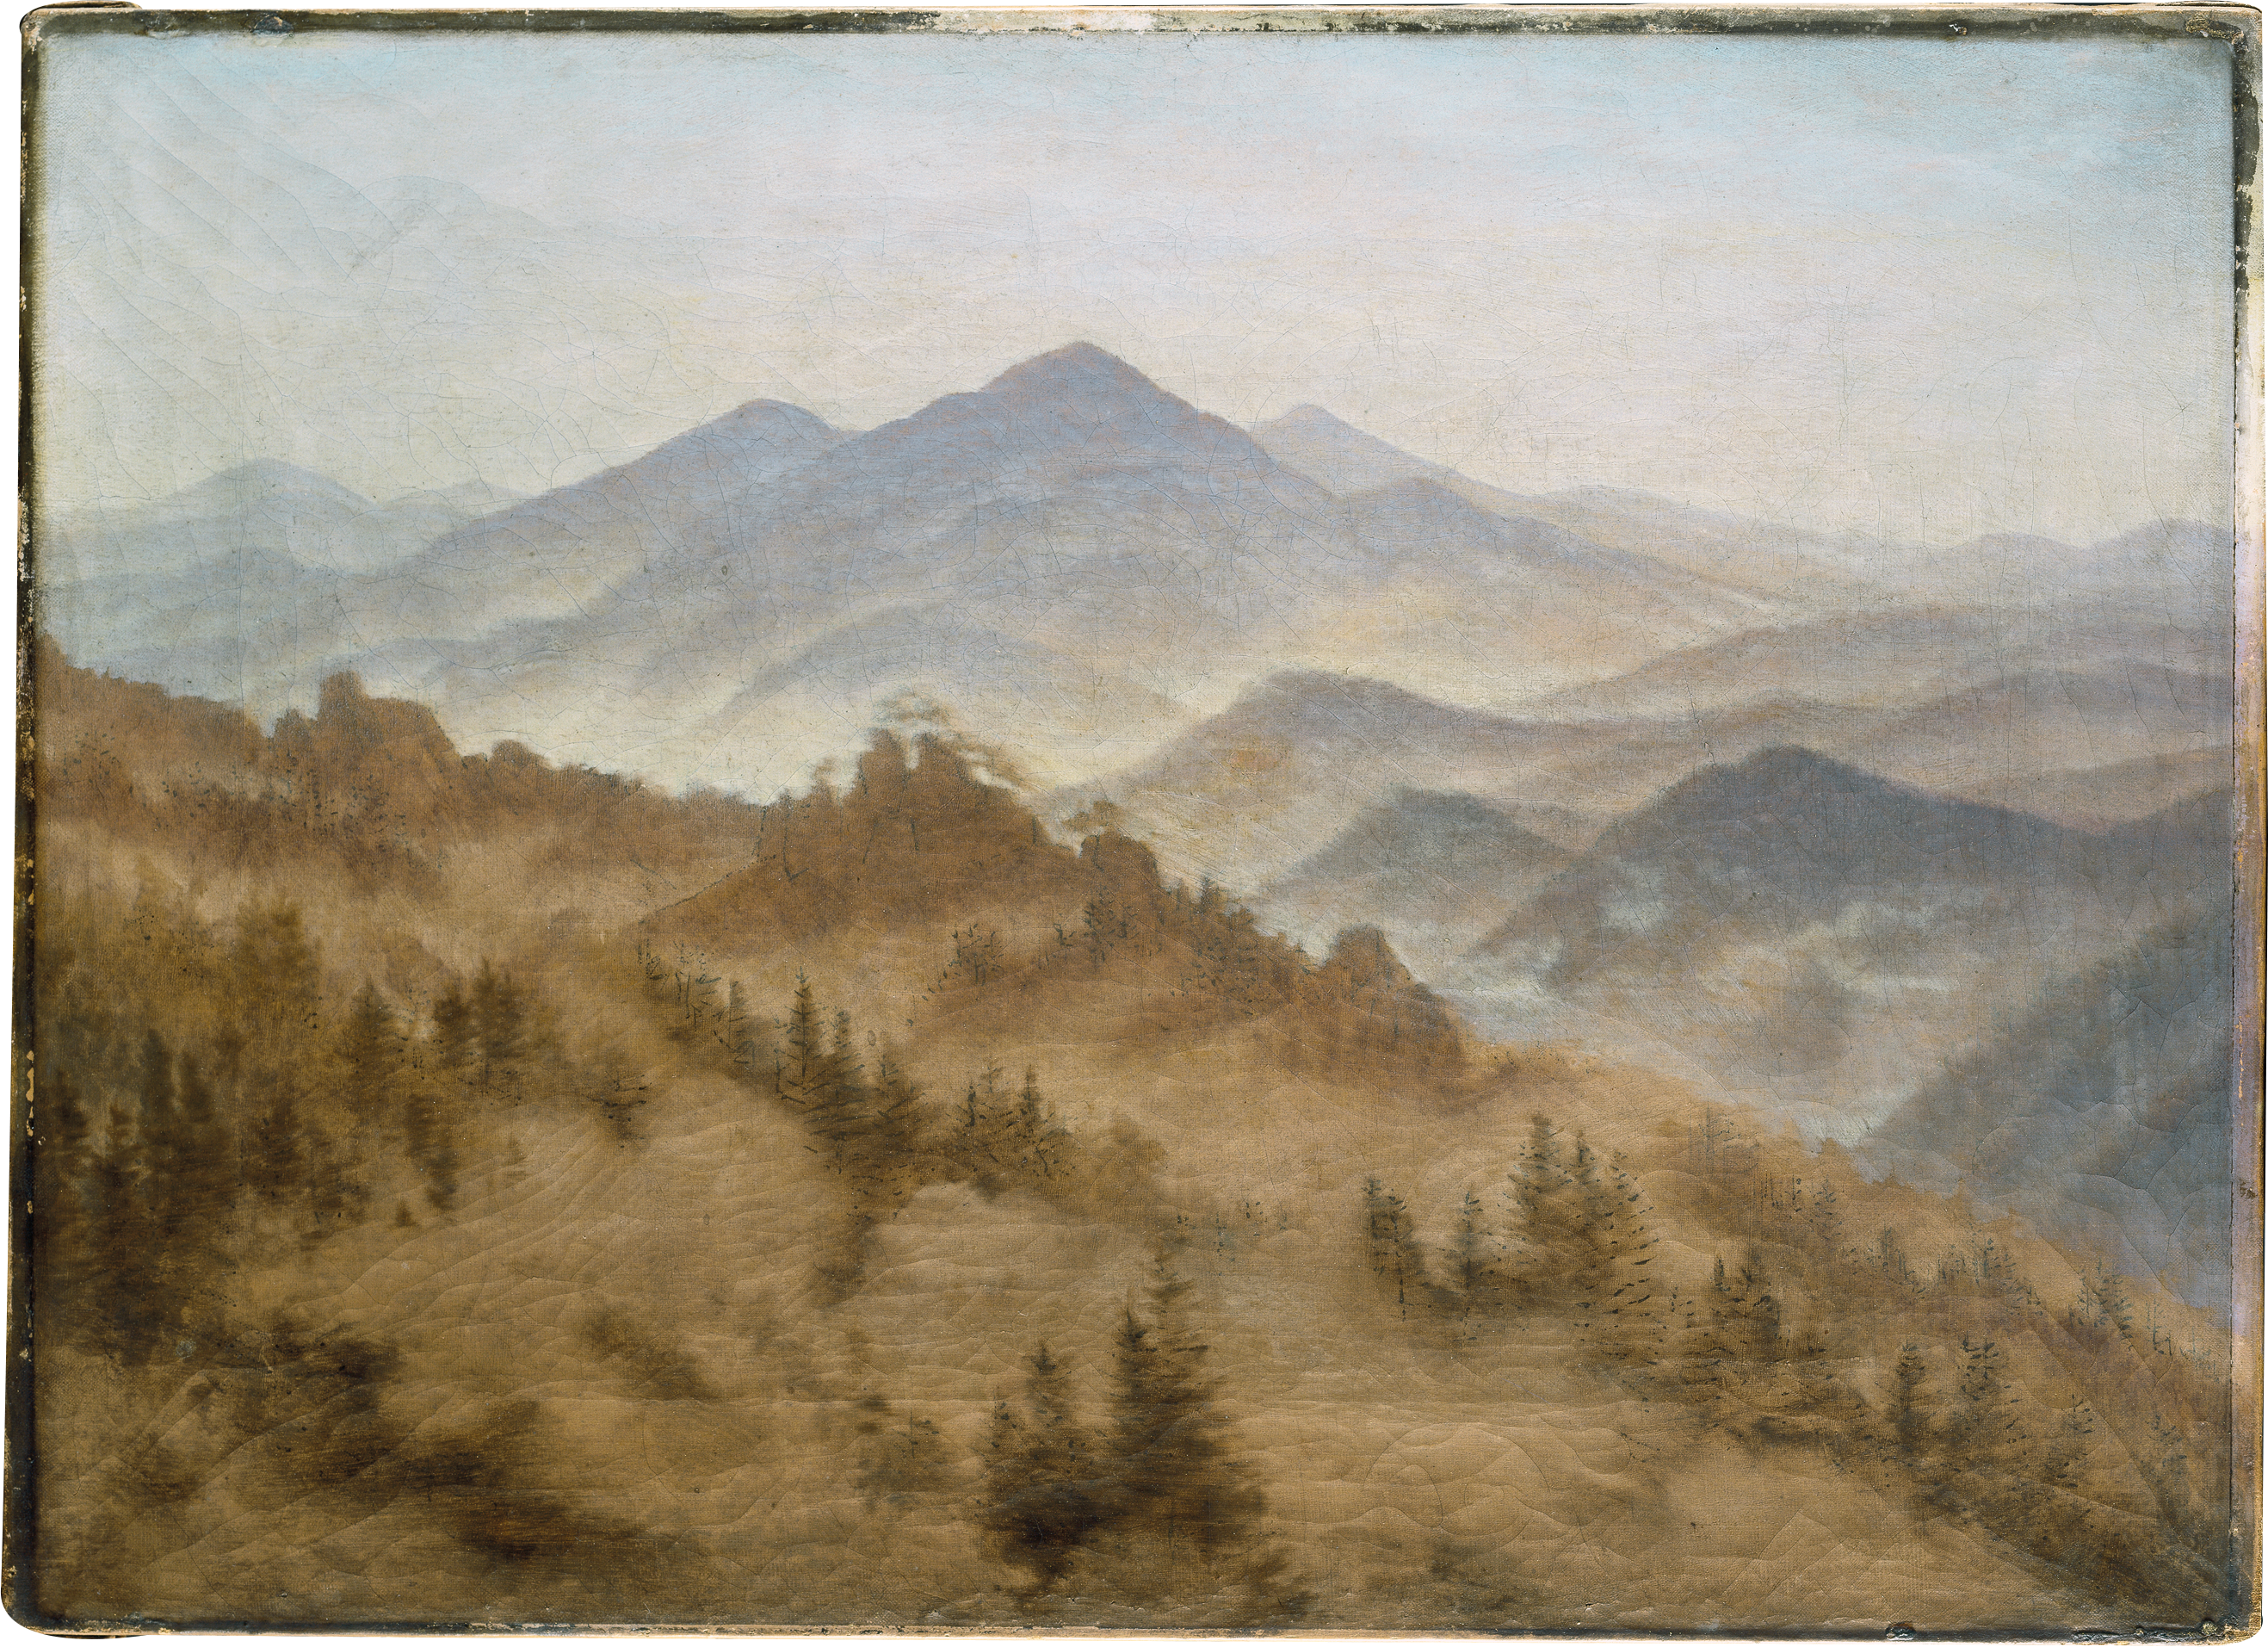 Yükselen Sisteki Dağlar by Caspar David Friedrich - 1835 civarı - 34,9 x 48,5 cm 